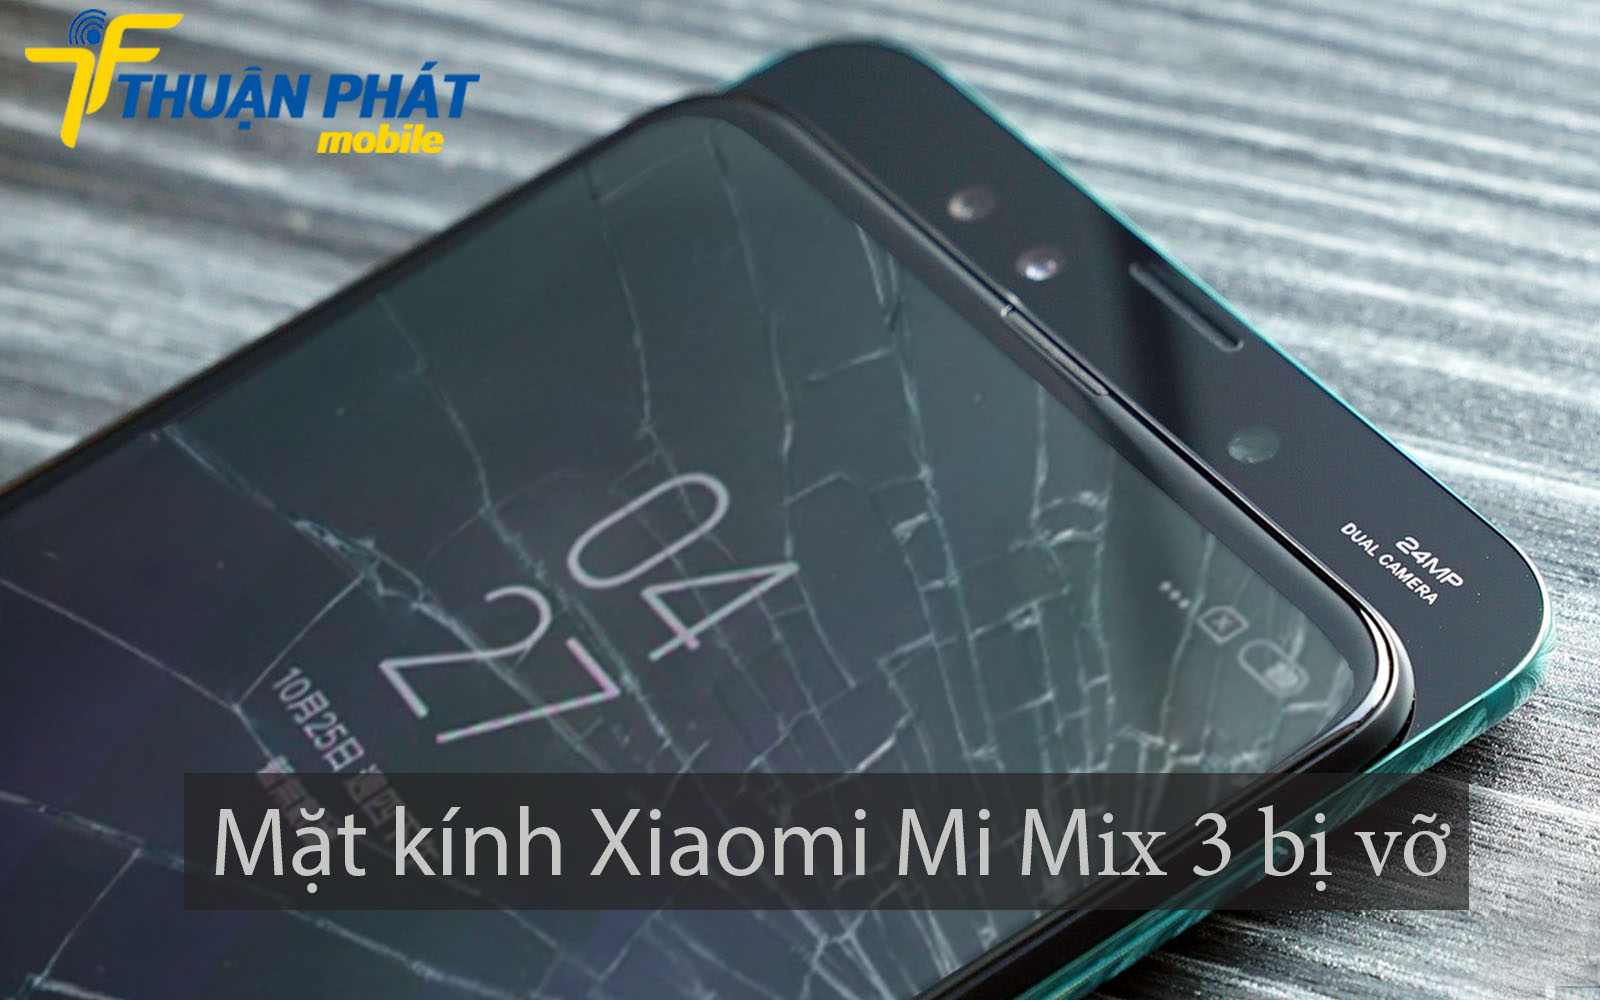 Mặt kính Xiaomi Mi Mix 3 bị vỡ